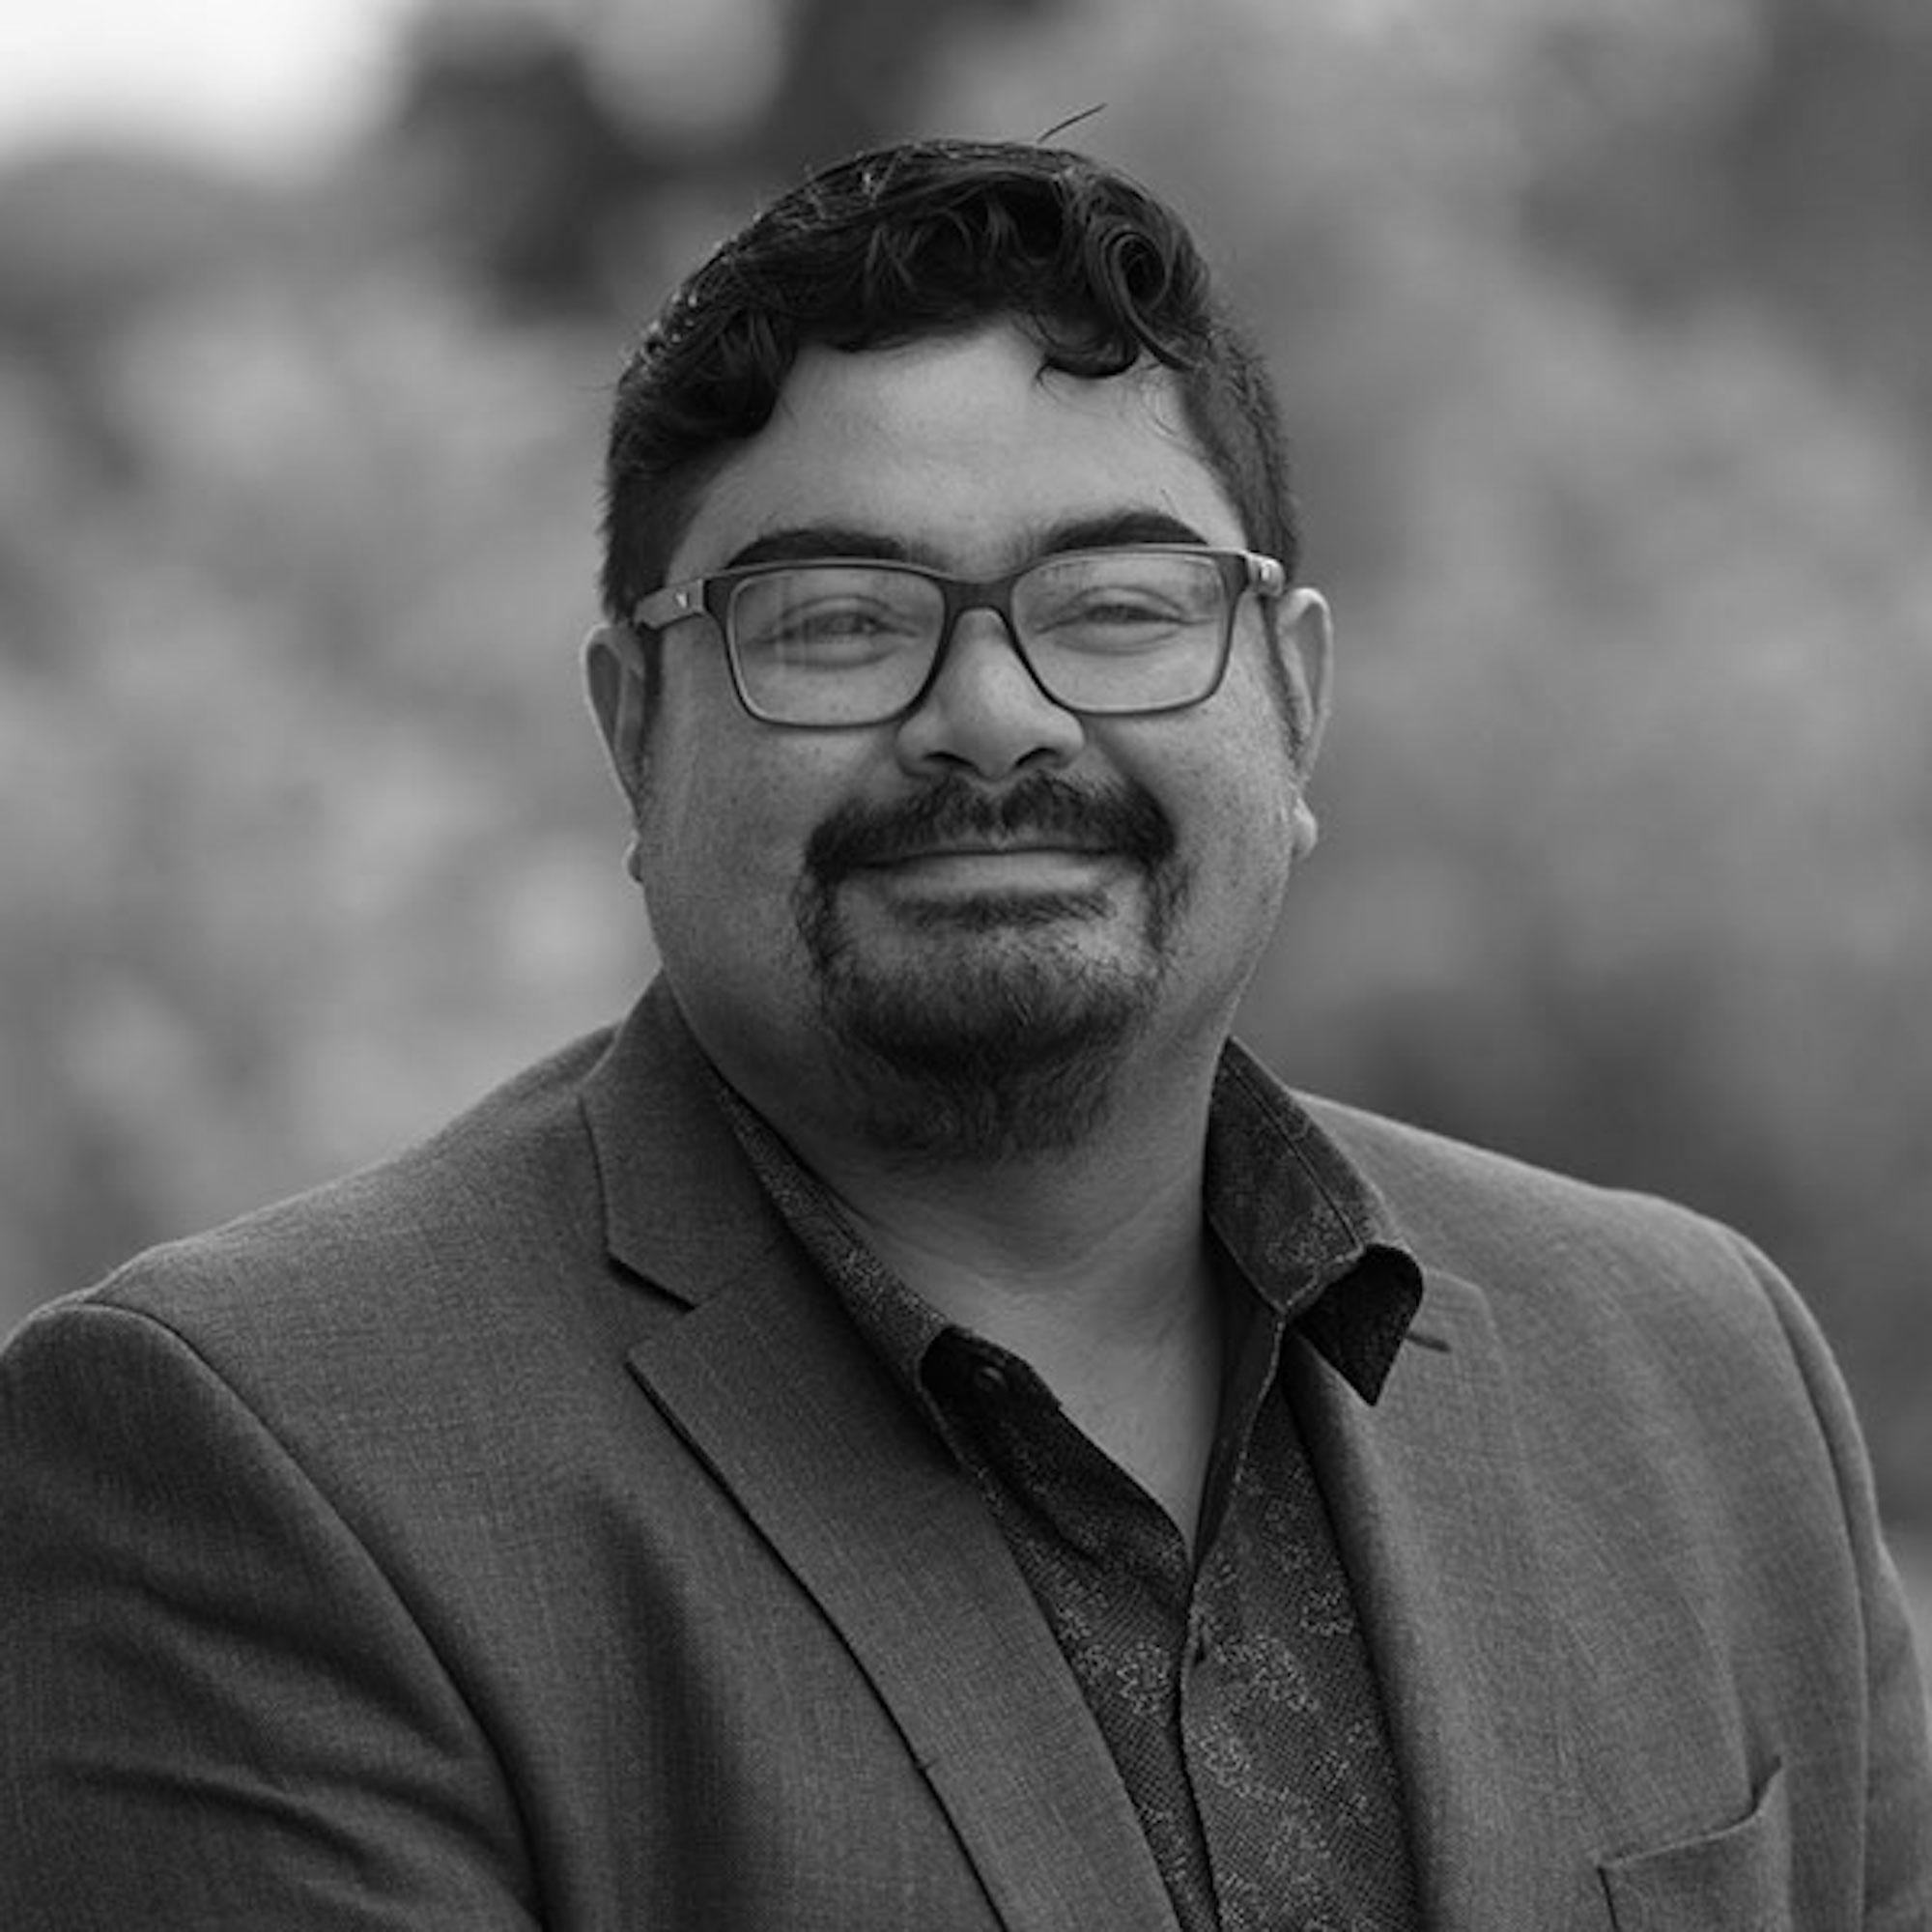 Ricardo Valencia es profesor asociado de Comunicaciones en Fullerton, la universidad estatal de California. Twitter: @ricardovalp.